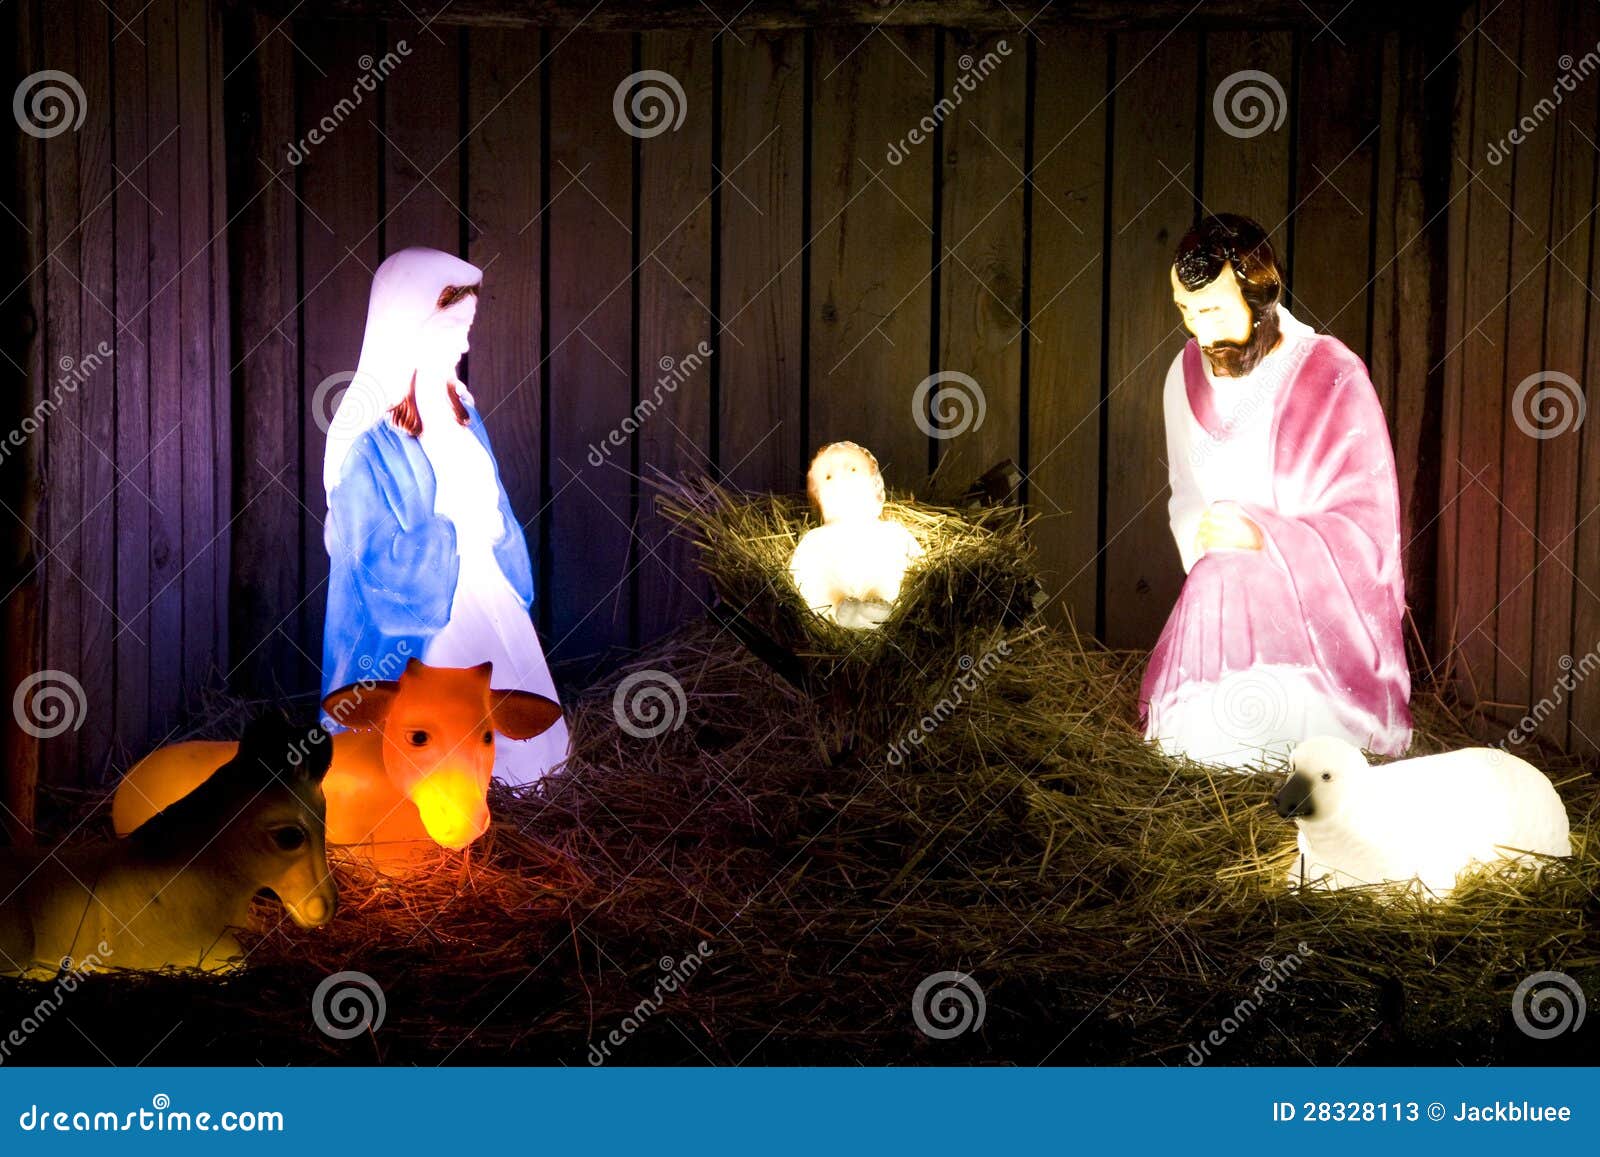 Birth Of Jesus Christmas Lights Stock Photos - Image: 28328113